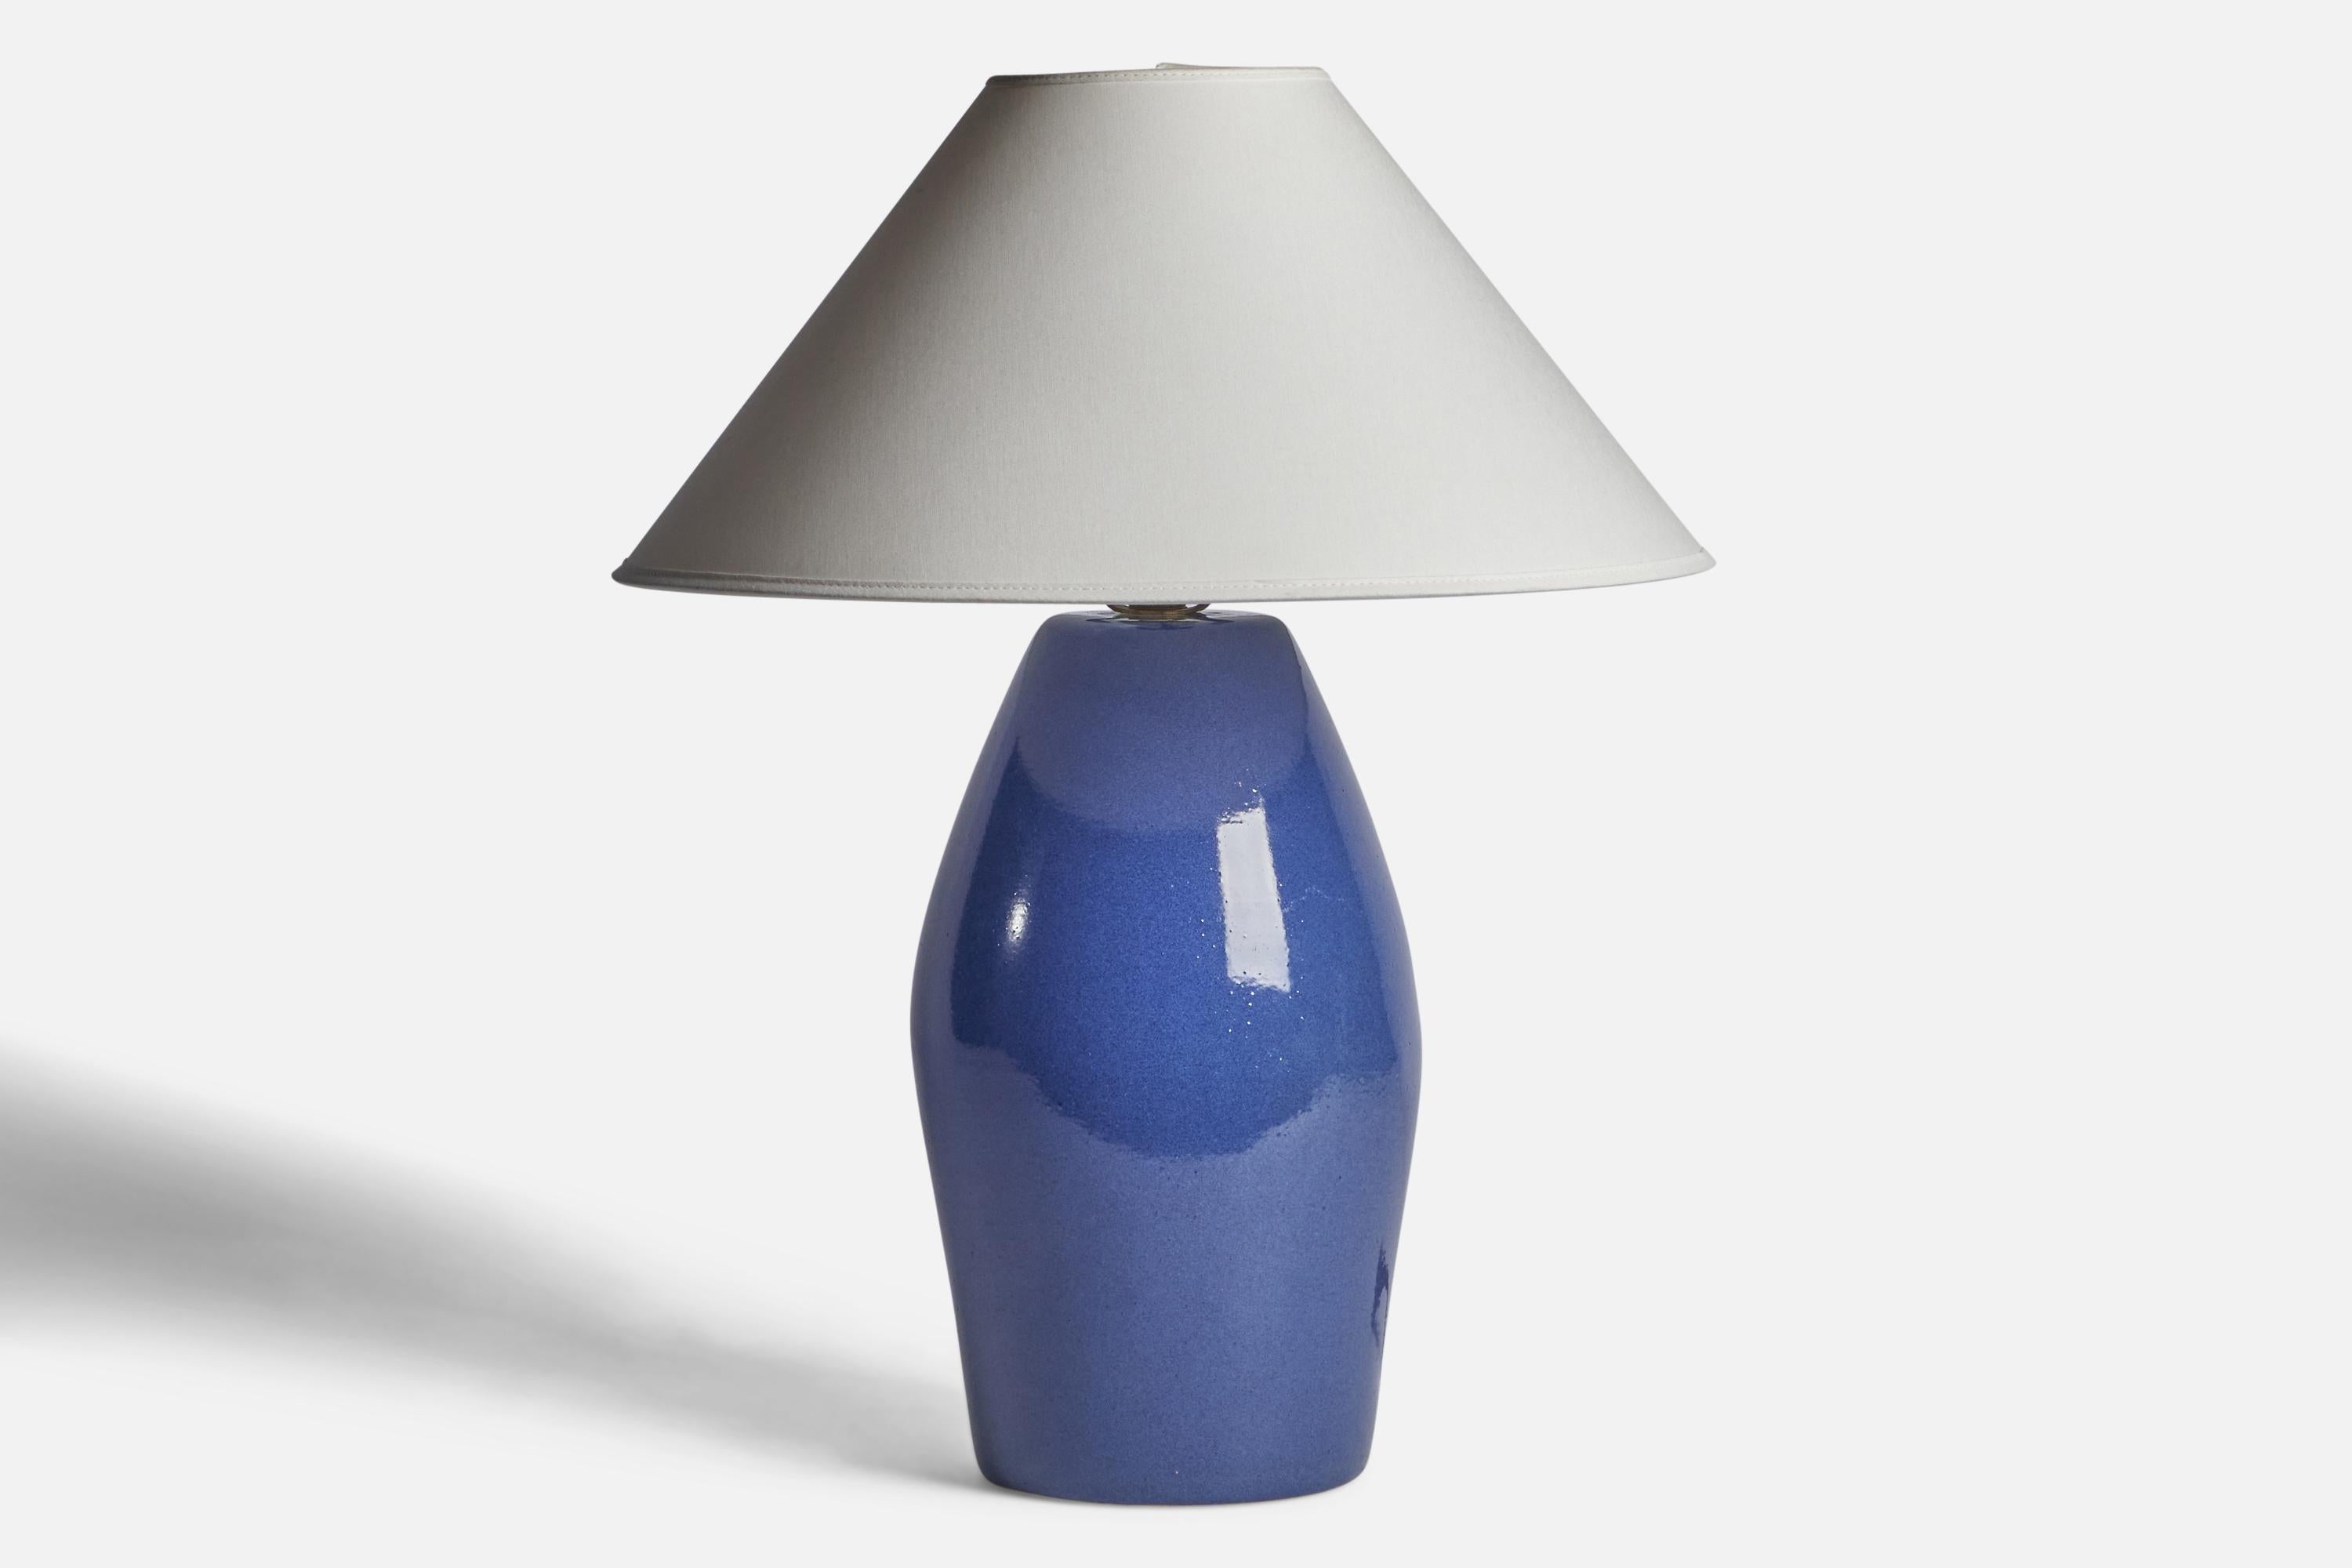 Lampe de table en céramique émaillée bleue conçue par Jane & Gordon Martz et produite par Marshall Studios, États-Unis, années 1960.

Dimensions de la lampe (pouces) : 15.5